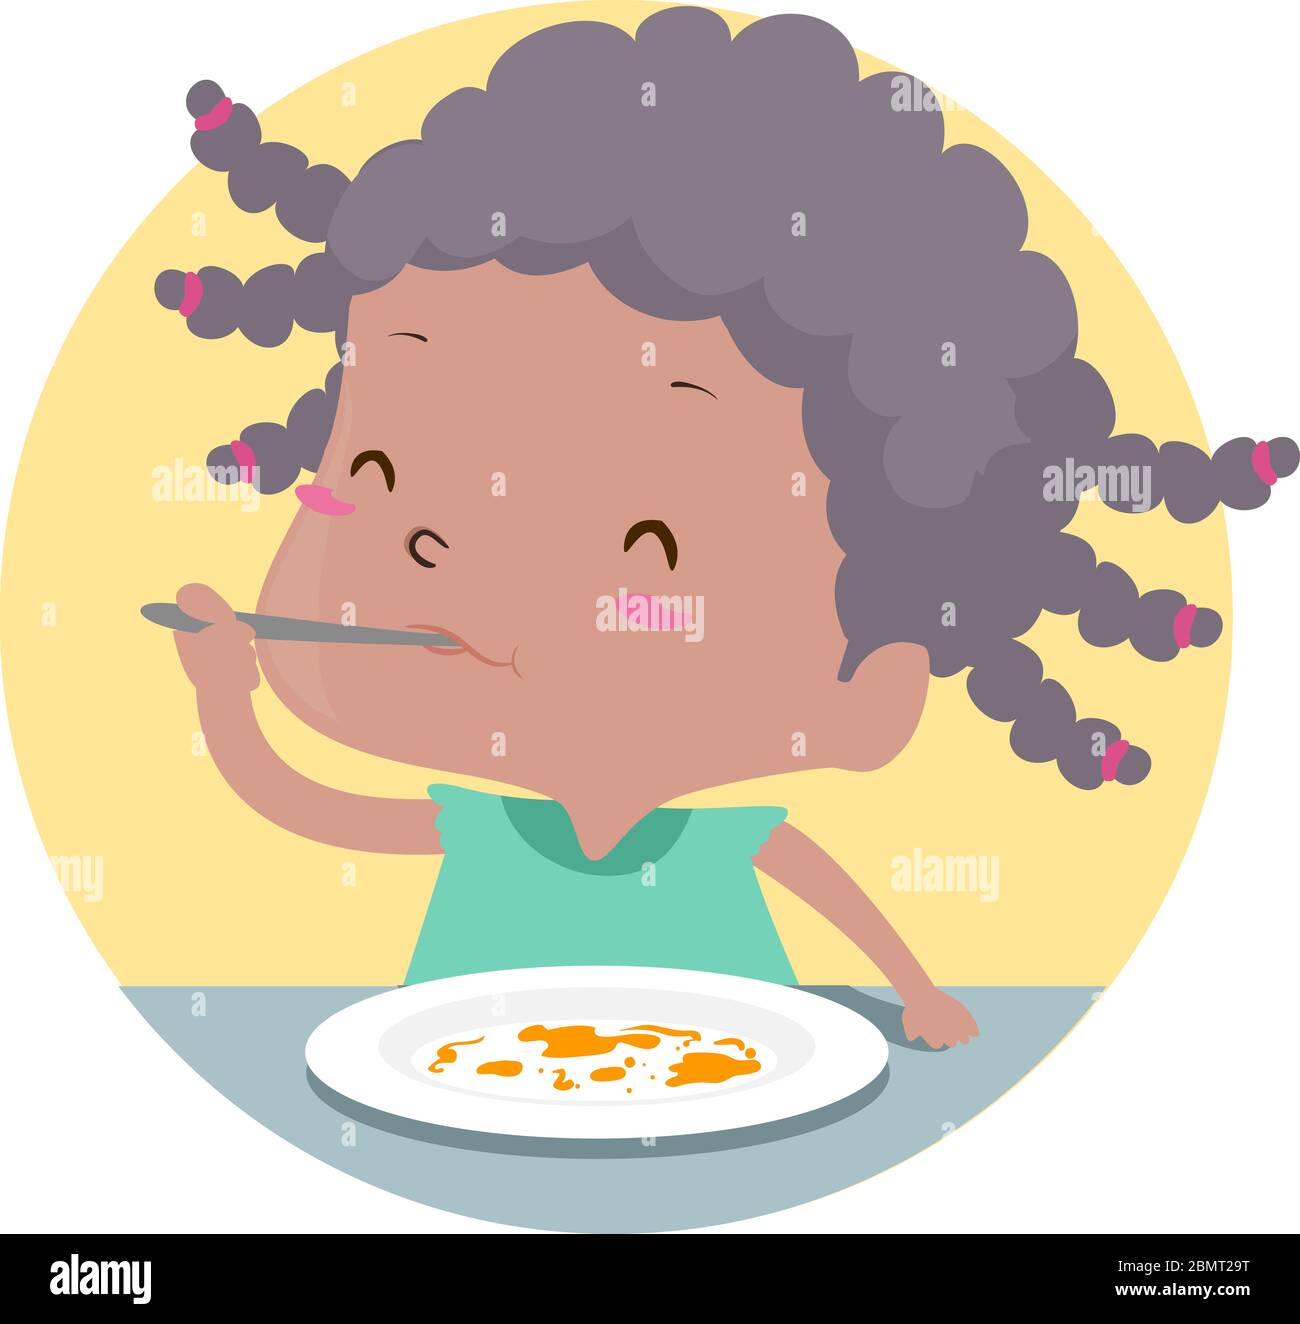 Illustrazione di una bambina con cucchiaio in bocca e piatto vuoto, finendo il suo delizioso pasto Foto Stock